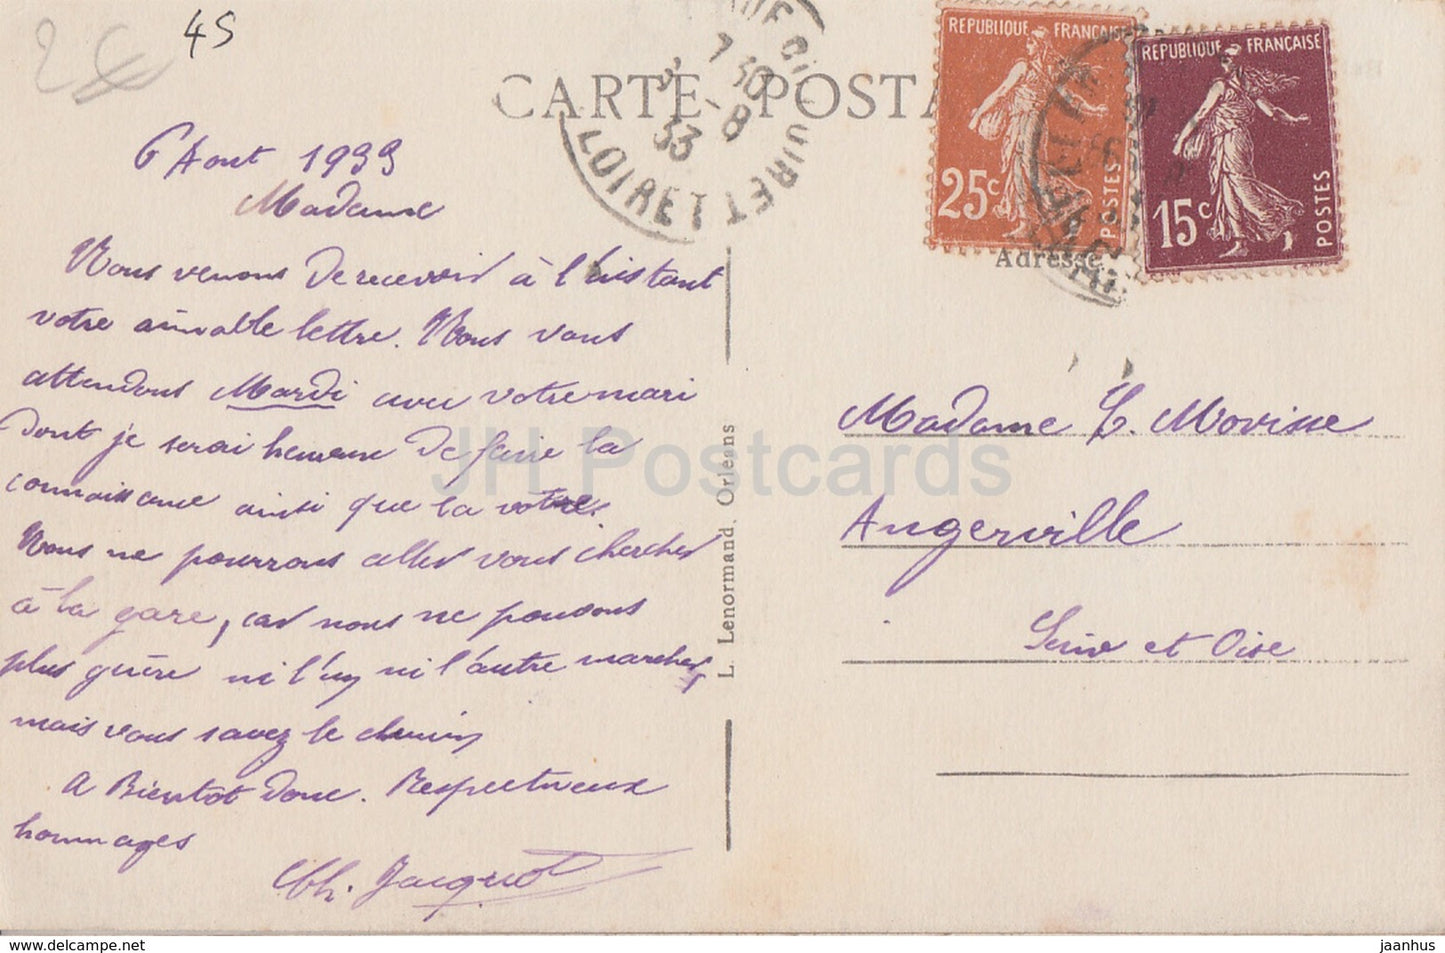 Bellegarde - Le Donjon - castle - old postcard - 1933 - France - used